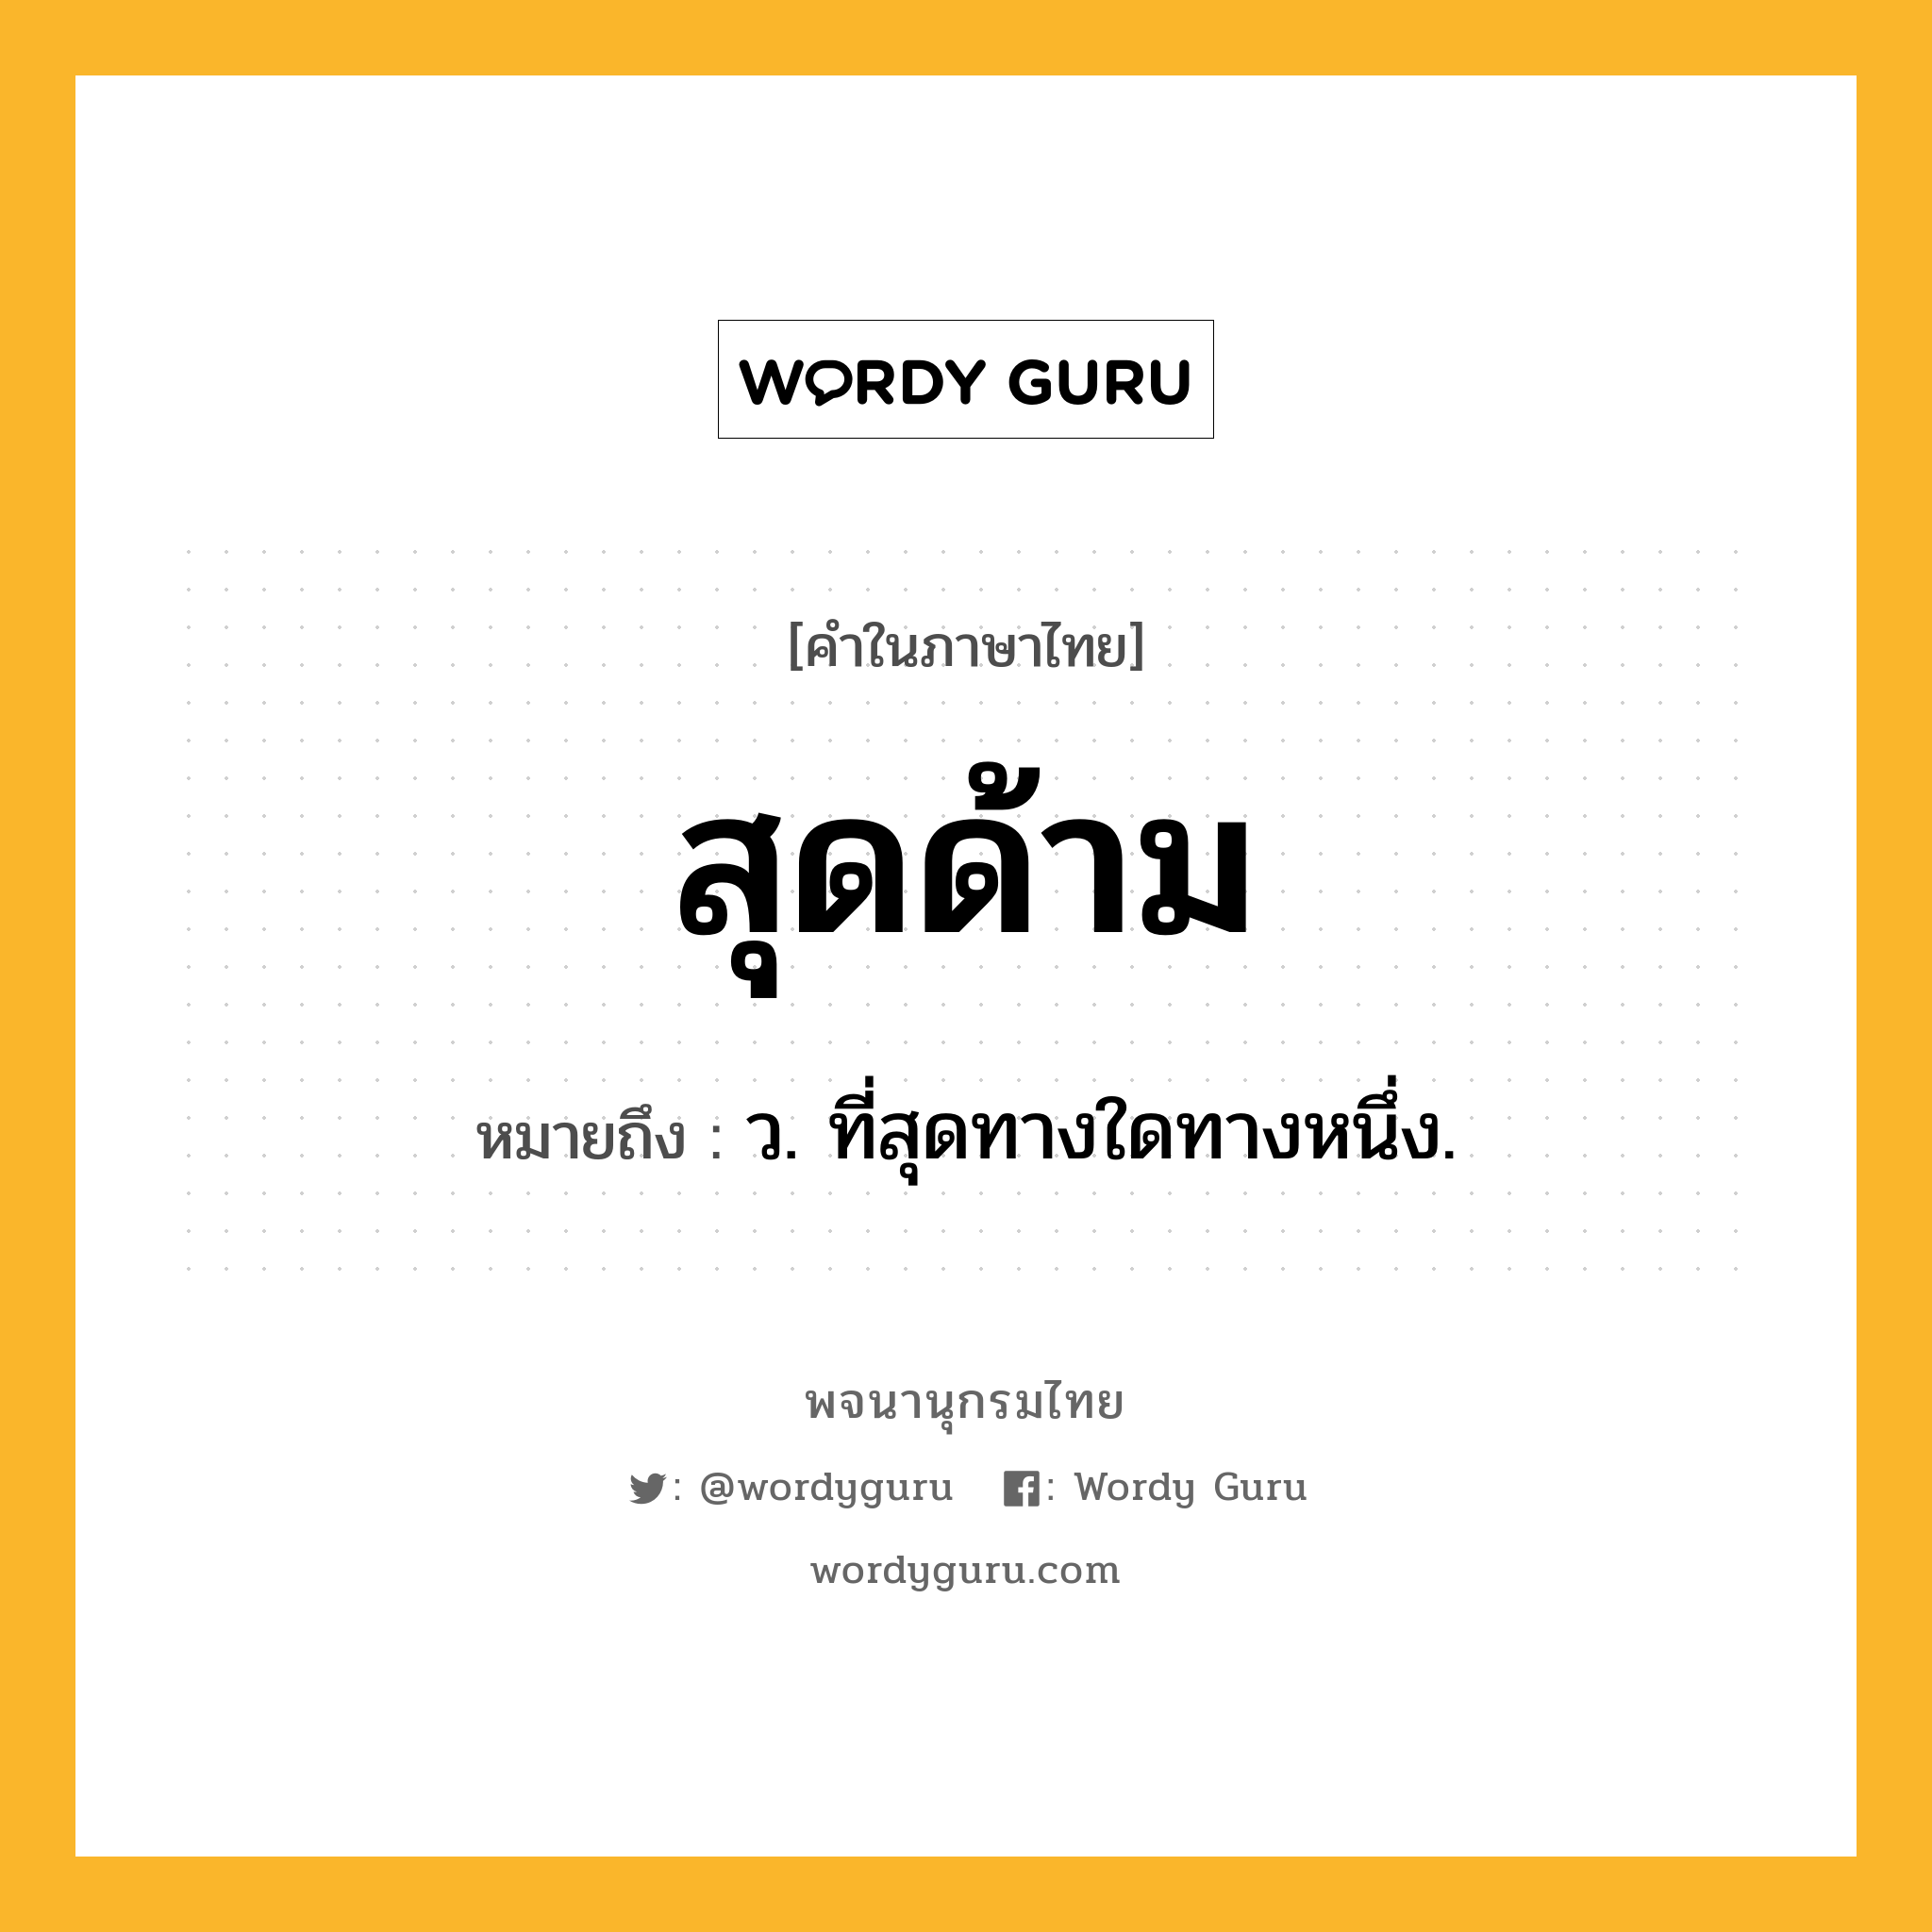 สุดด้าม ความหมาย หมายถึงอะไร?, คำในภาษาไทย สุดด้าม หมายถึง ว. ที่สุดทางใดทางหนึ่ง.